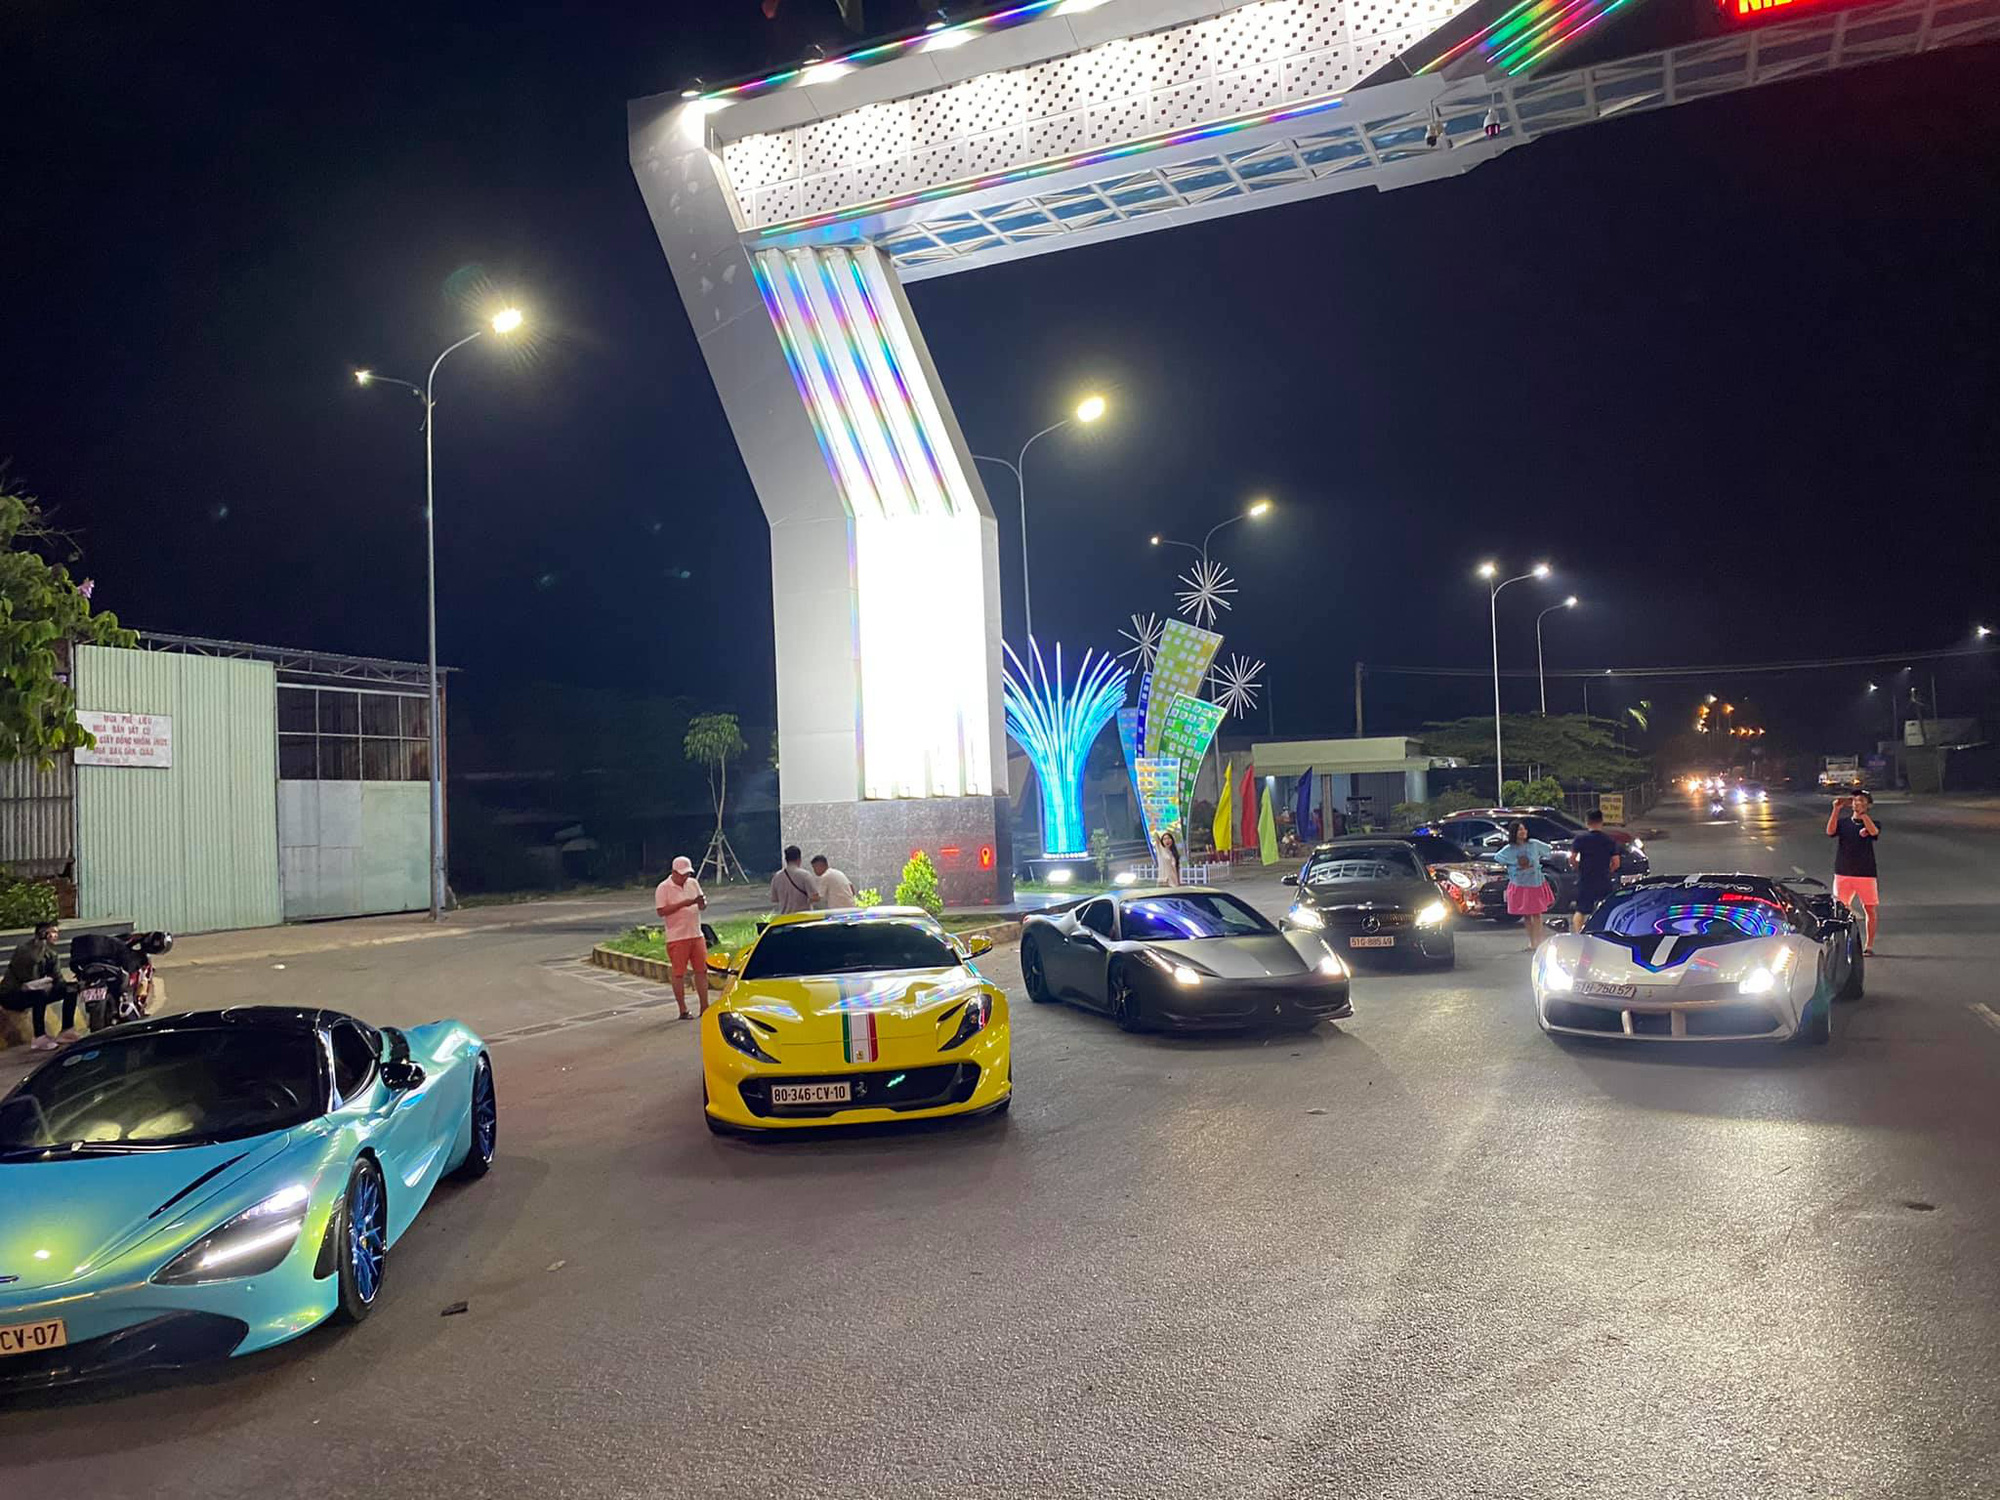 Dàn siêu xe Evo Team đổ bộ Tây Ninh dịp cuối tuần, hai chiếc xuất hiện với diện mạo mới - Ảnh 2.